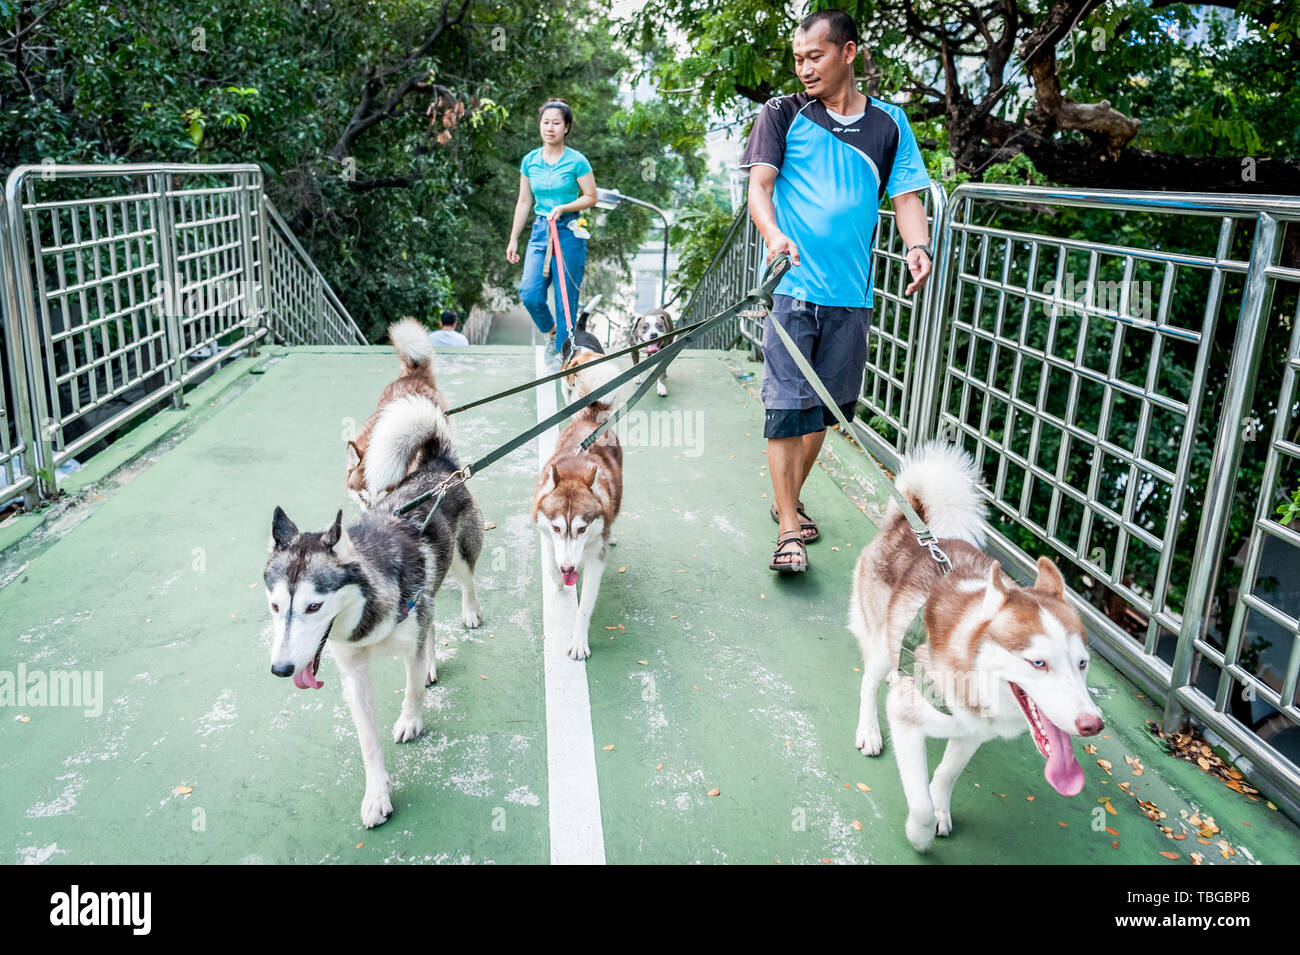 Un dog walker prende la sua bella cani- Siberian Husky (credo che sia la razza ma può essere sbagliata) per una passeggiata attraverso le strade di Bangkok Th Foto Stock